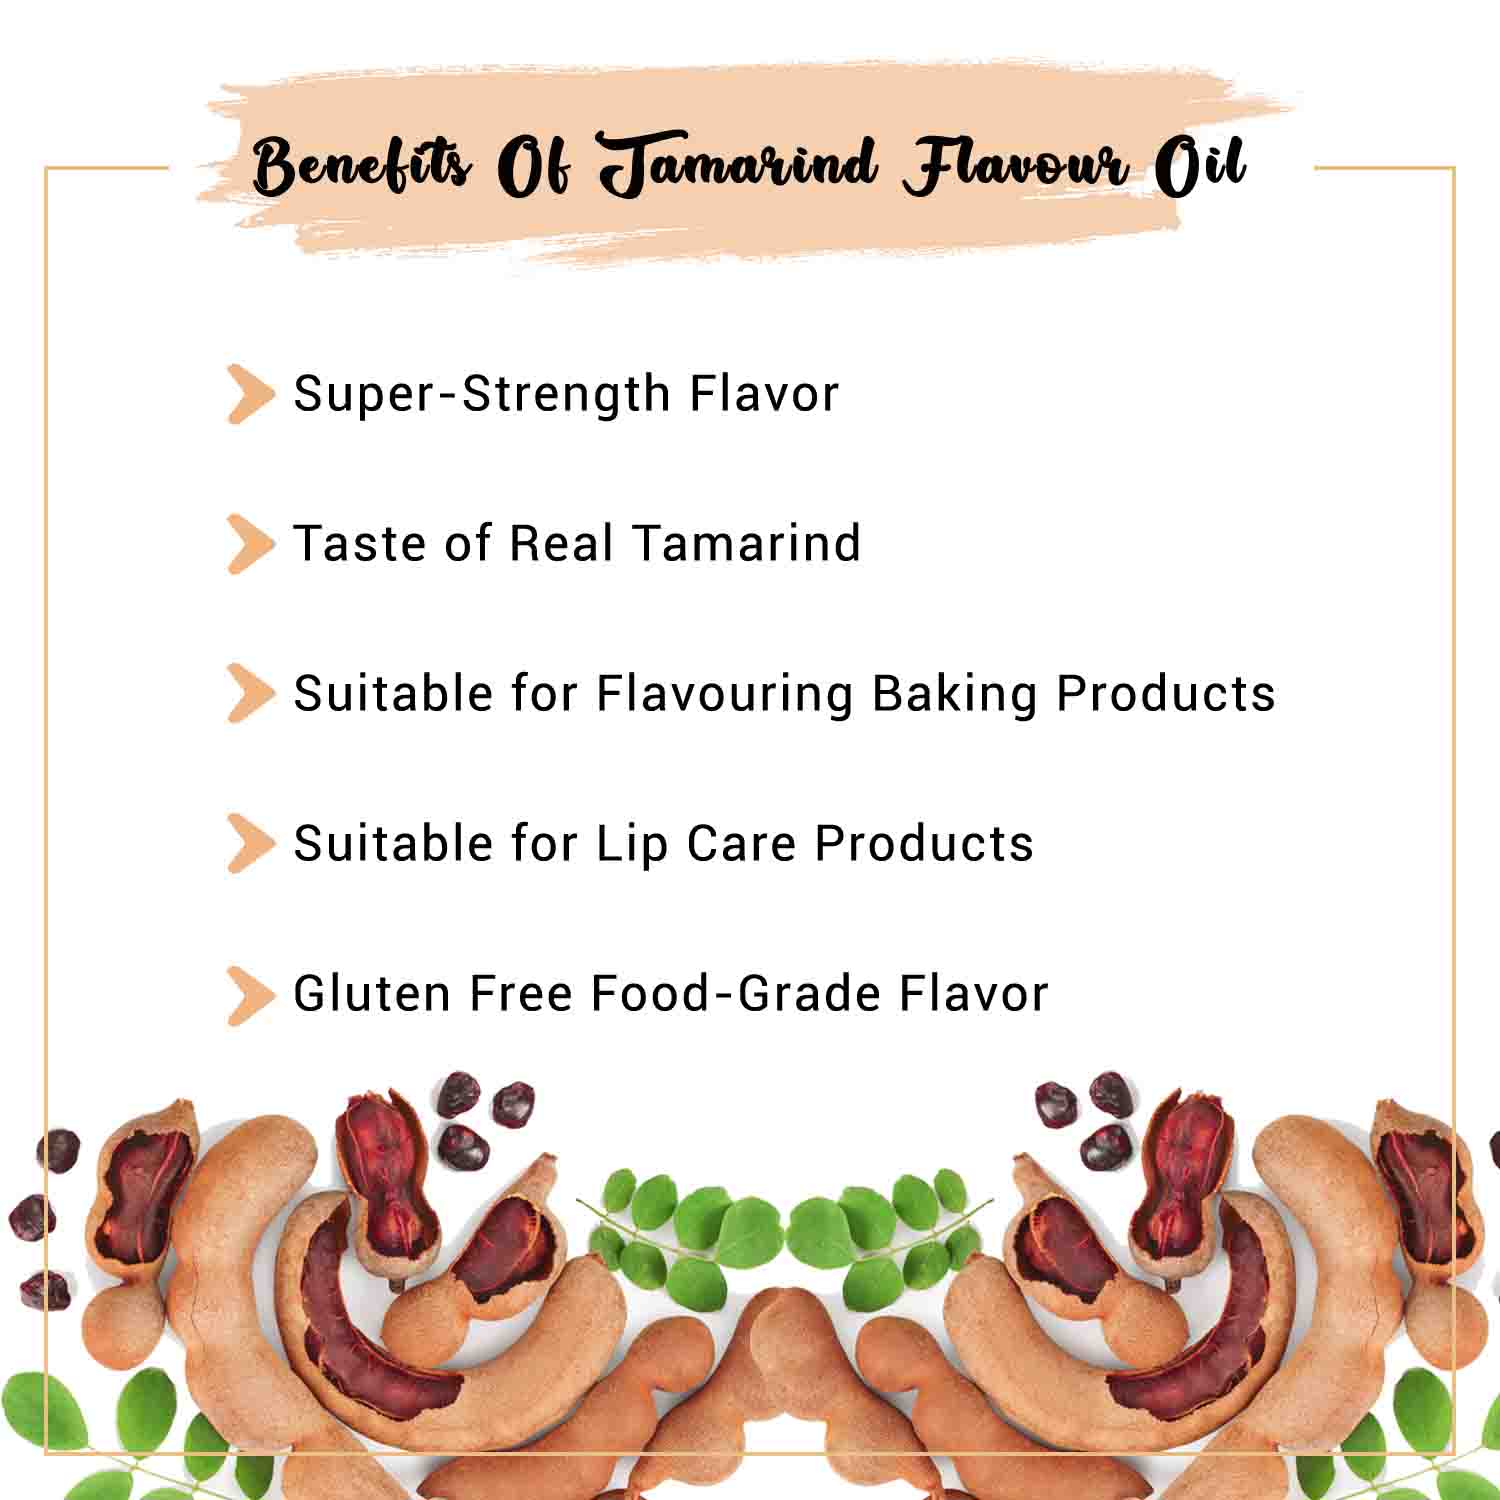 Benefits of Tamarind Flavor Oil